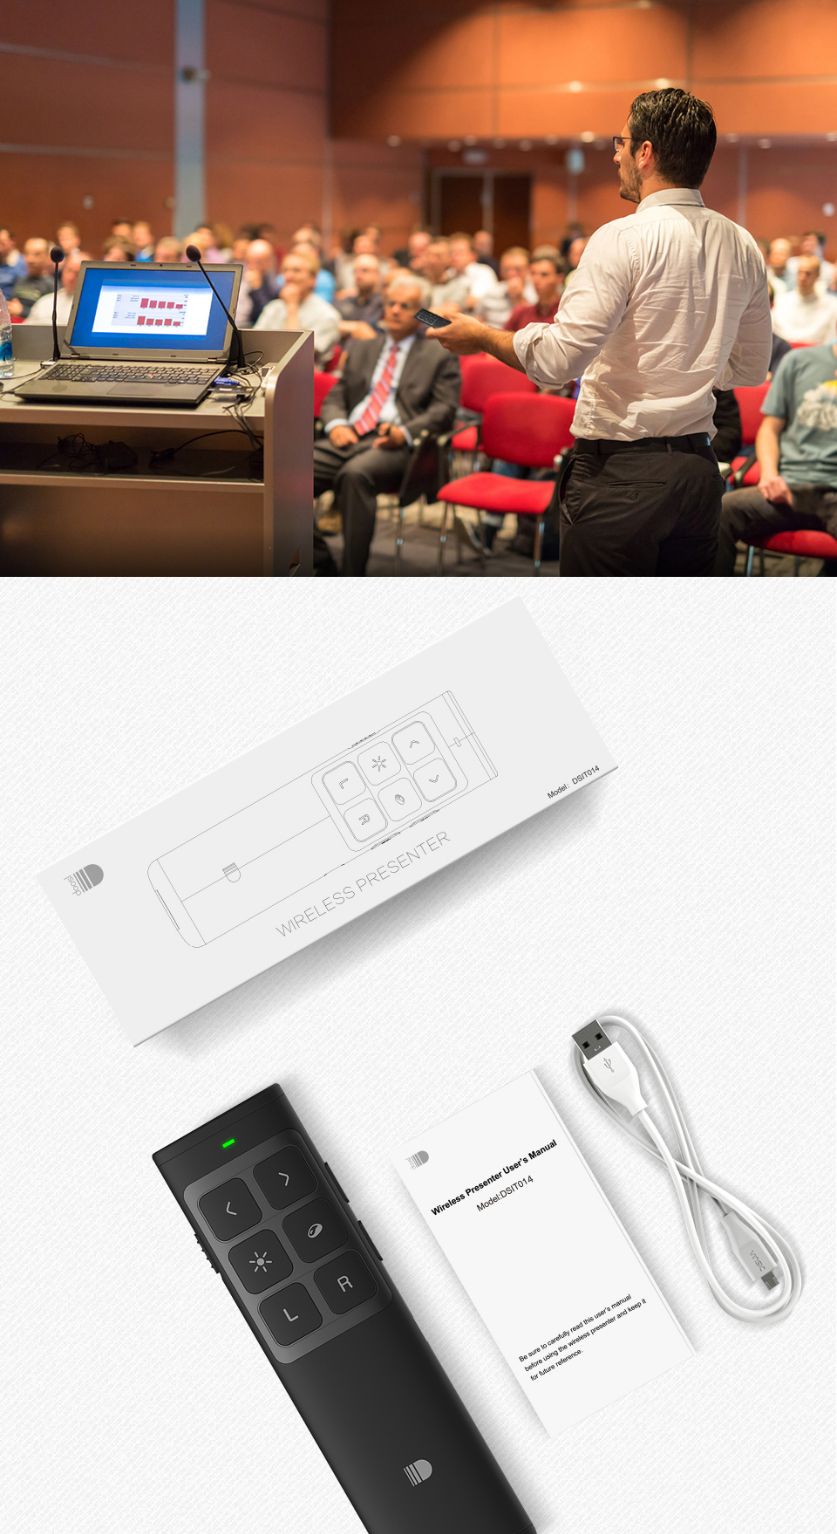 Doosl-DSIT014-24G-Wireless-Laser-Pointer-Presenter-Remote-Control-for-PPT-Speech-Meeting-Teaching-Pr-1348374